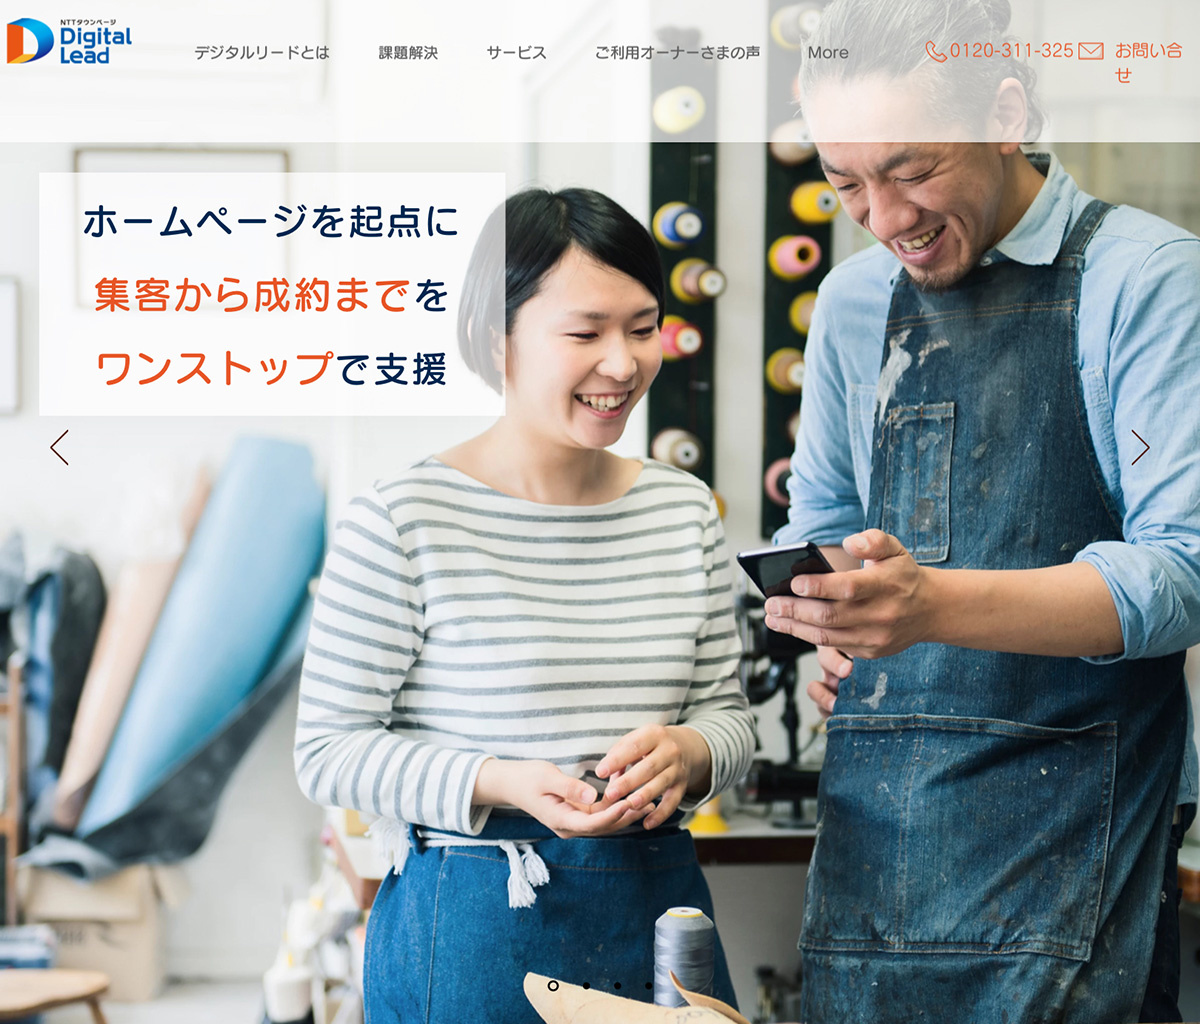 NTTタウンページが提供するデジタルマーケティングサービスの「デジタルリード」